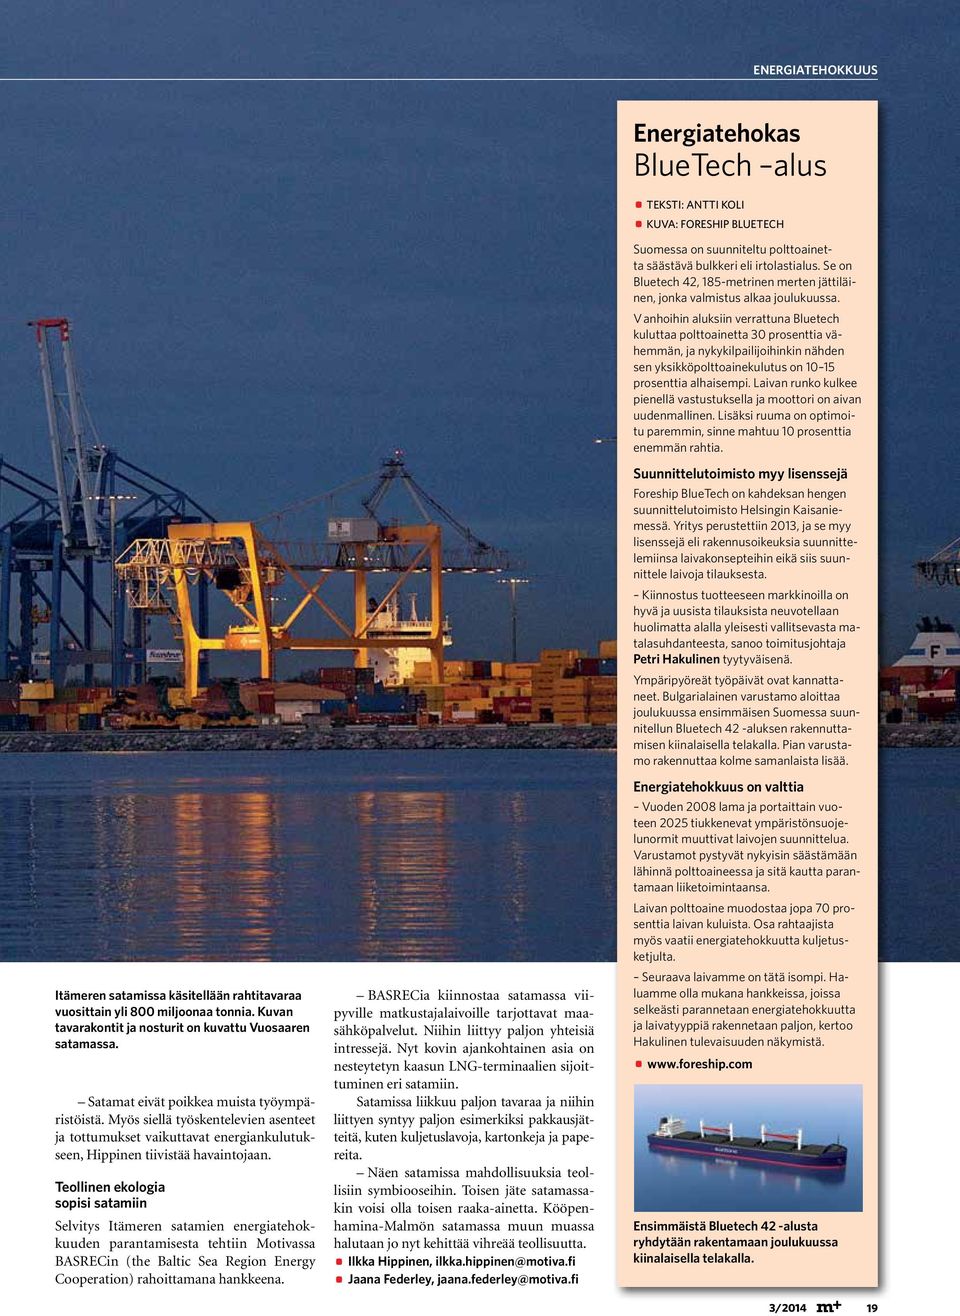 Teollinen ekologia sopisi satamiin Selvitys Itämeren satamien energiatehokkuuden parantamisesta tehtiin Motivassa BASRECin (the Baltic Sea Region Energy Cooperation) rahoittamana hankkeena.